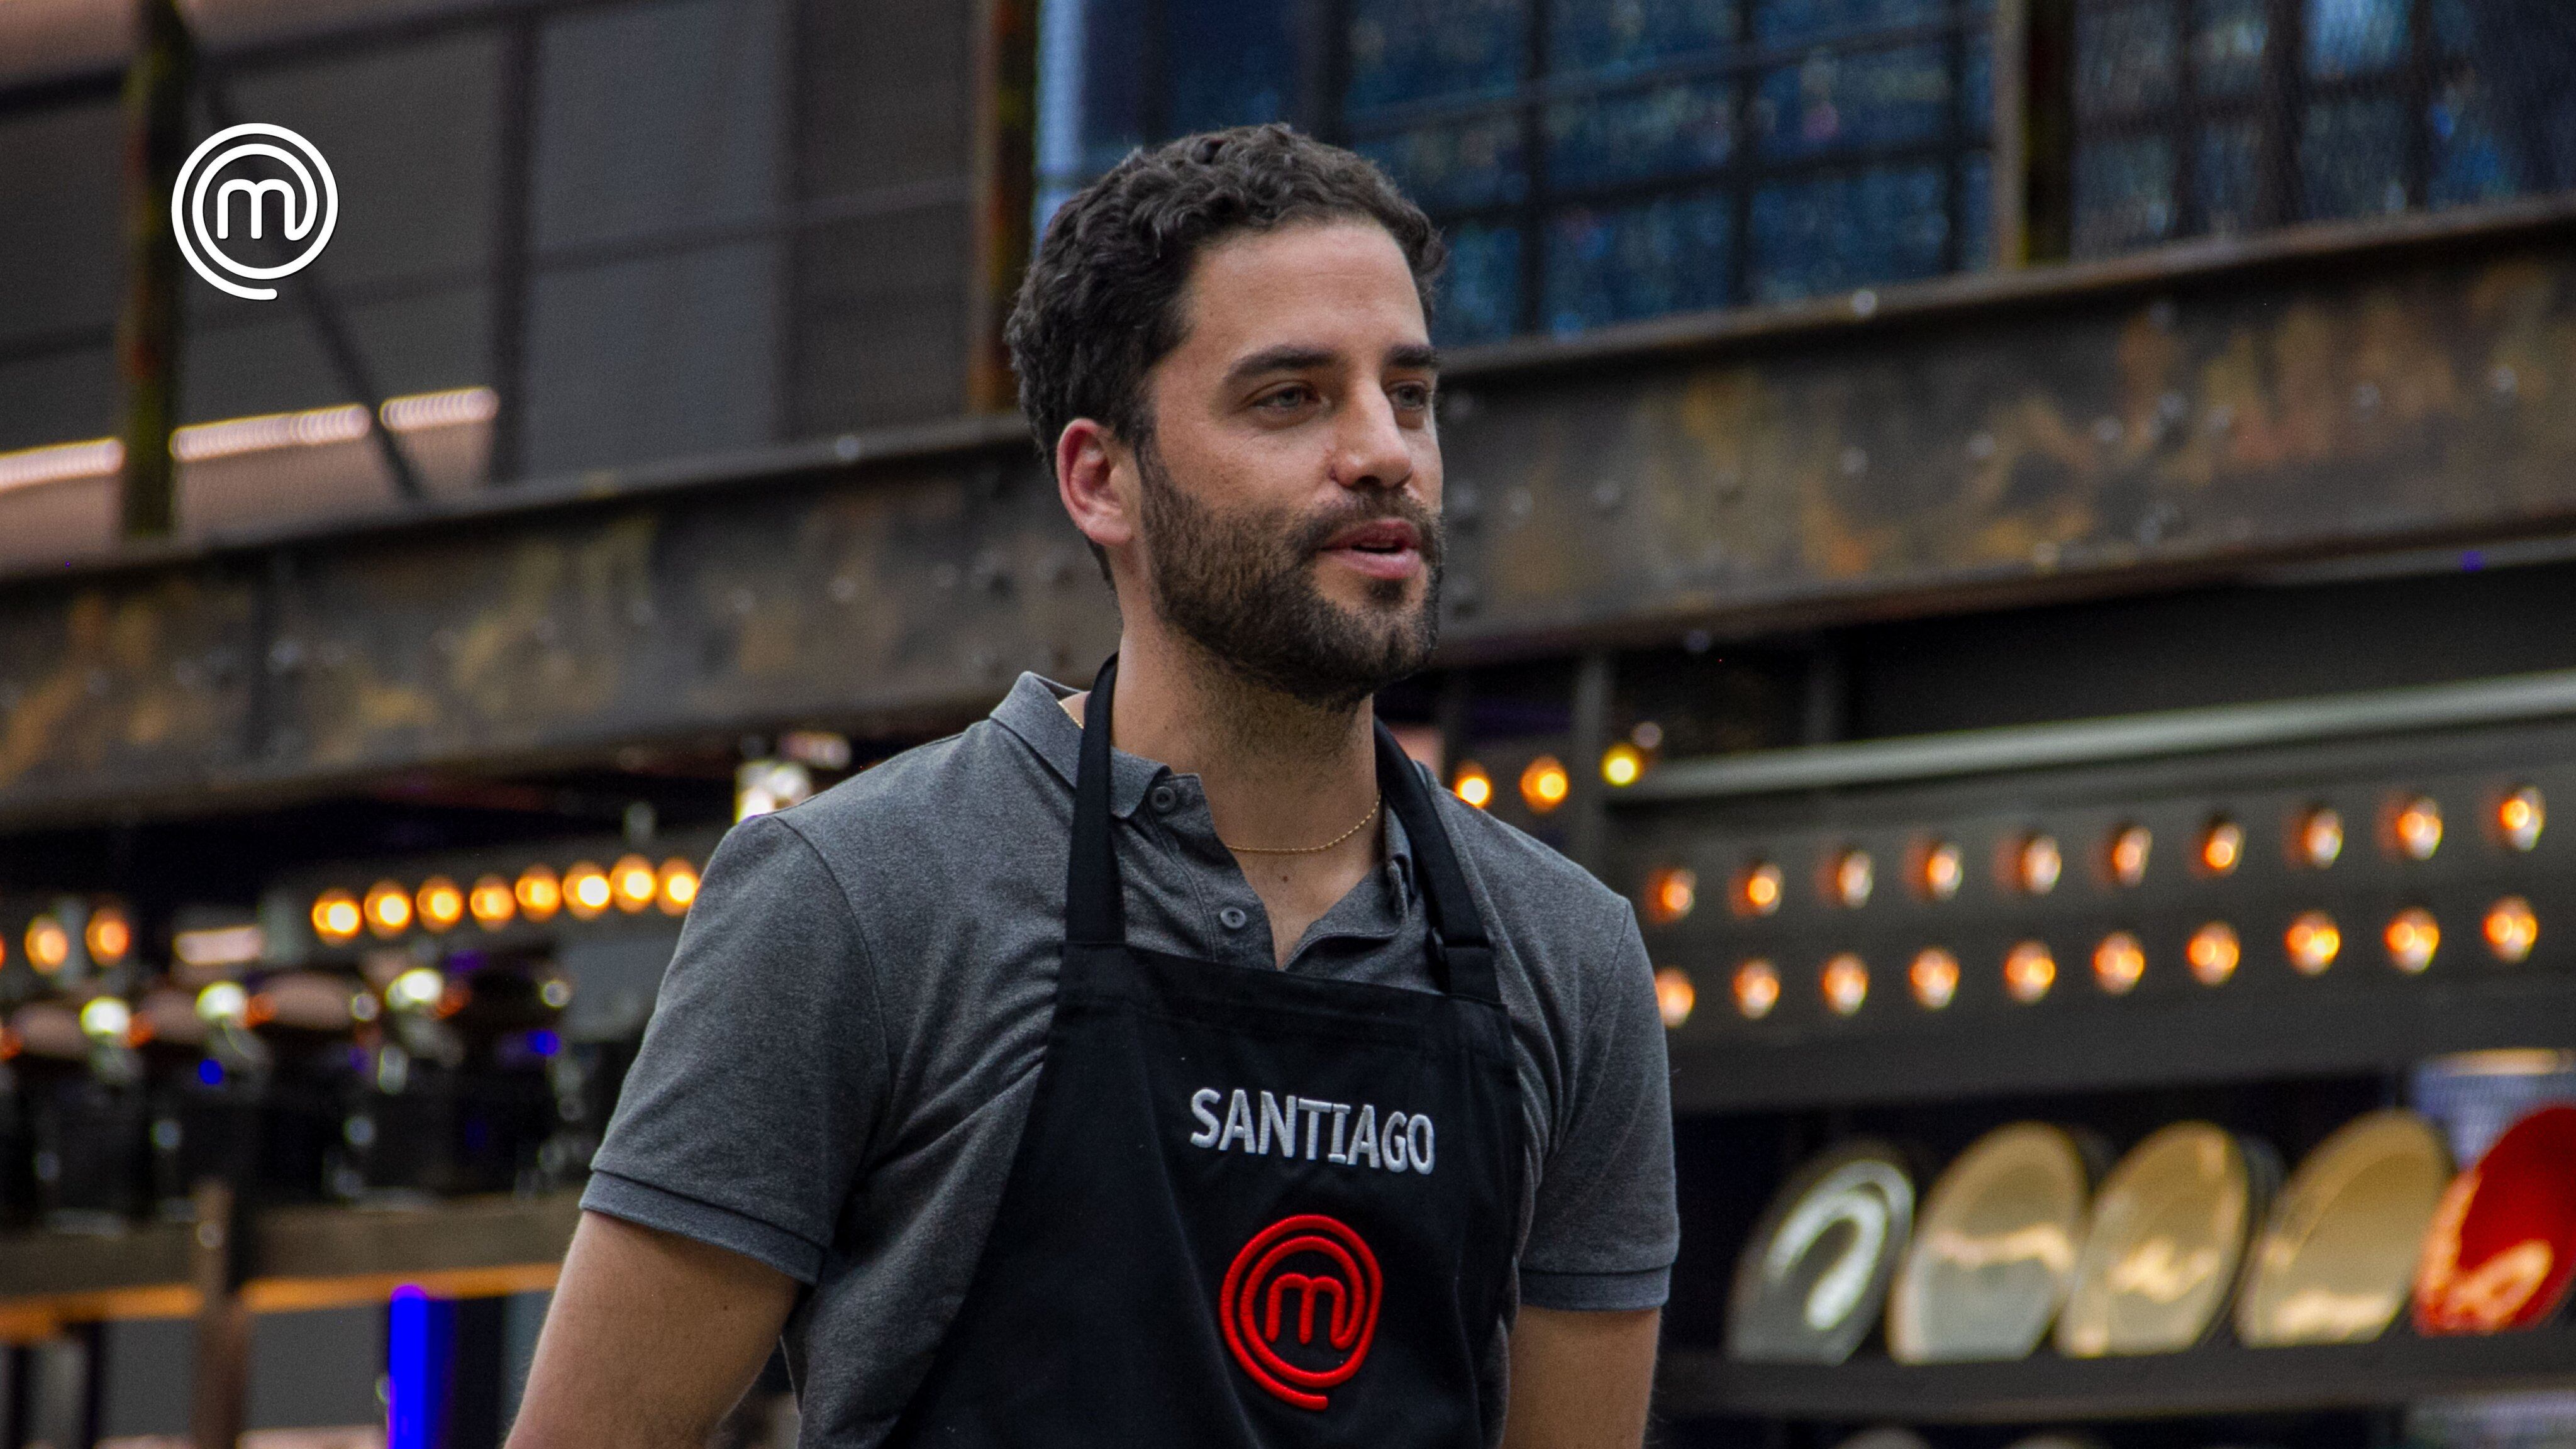 Santiago se perfilaba como uno de los cocineros que estaría en la final de MasterChef Ecuador (Foot: Twitter @teleamazonasec)